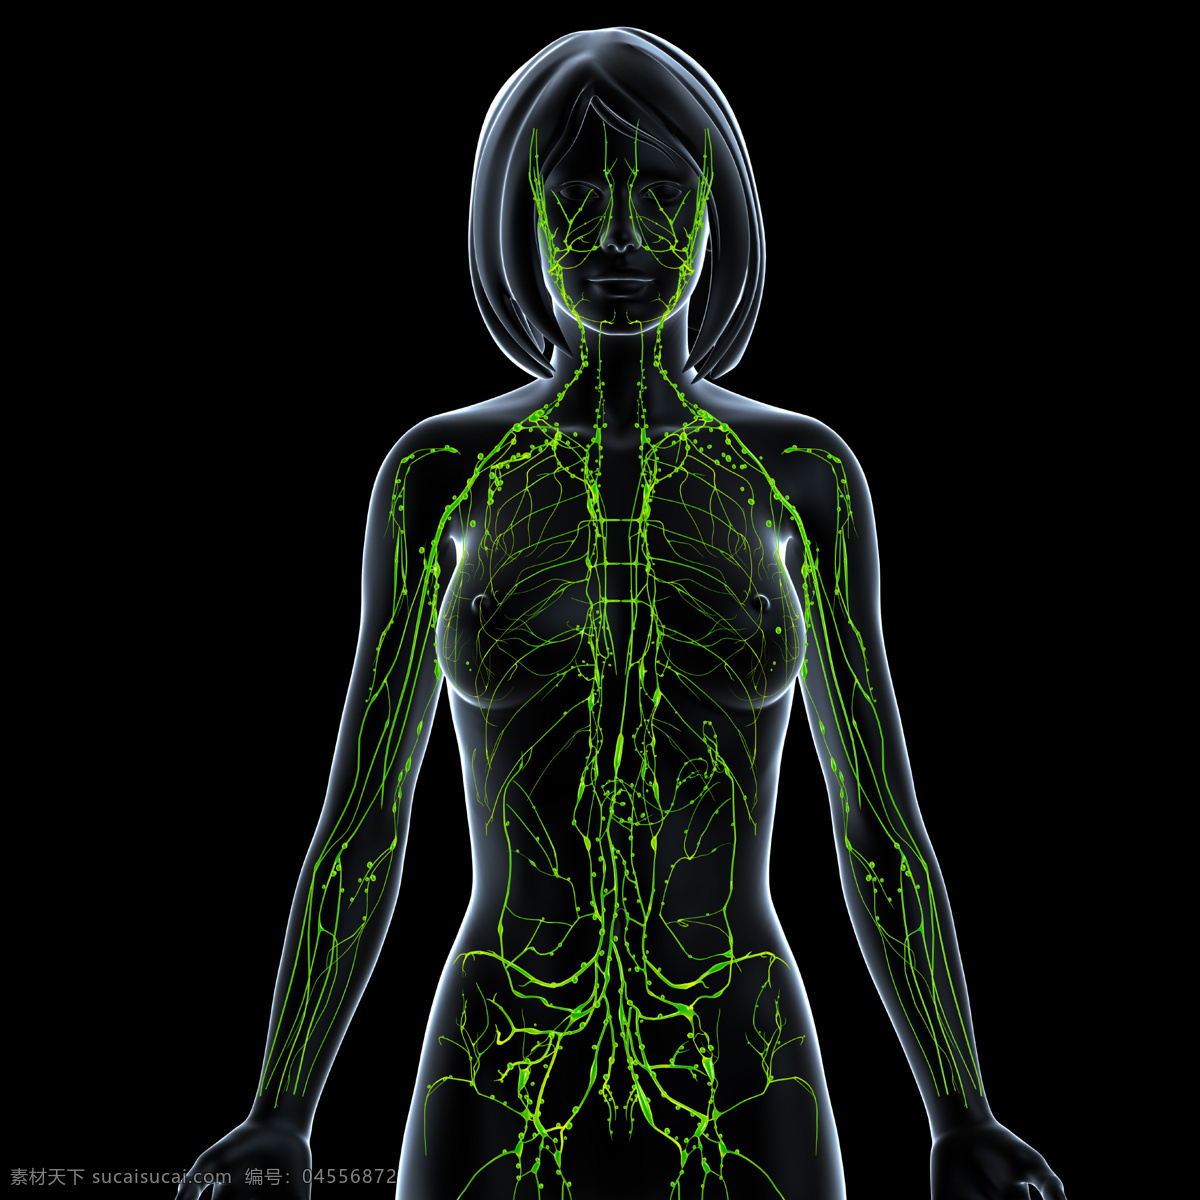 人体透视图 人体医疗透视 人体透视 人体 医疗 医学 女性 女人 背部 背面 身体 模型 3d模型 透视图 立体图 病症 症状 筋脉 脉络 脊椎 关节 疼痛 酸痛 受伤 x光透射 骨骼 人体构造 医疗护理 现代科技